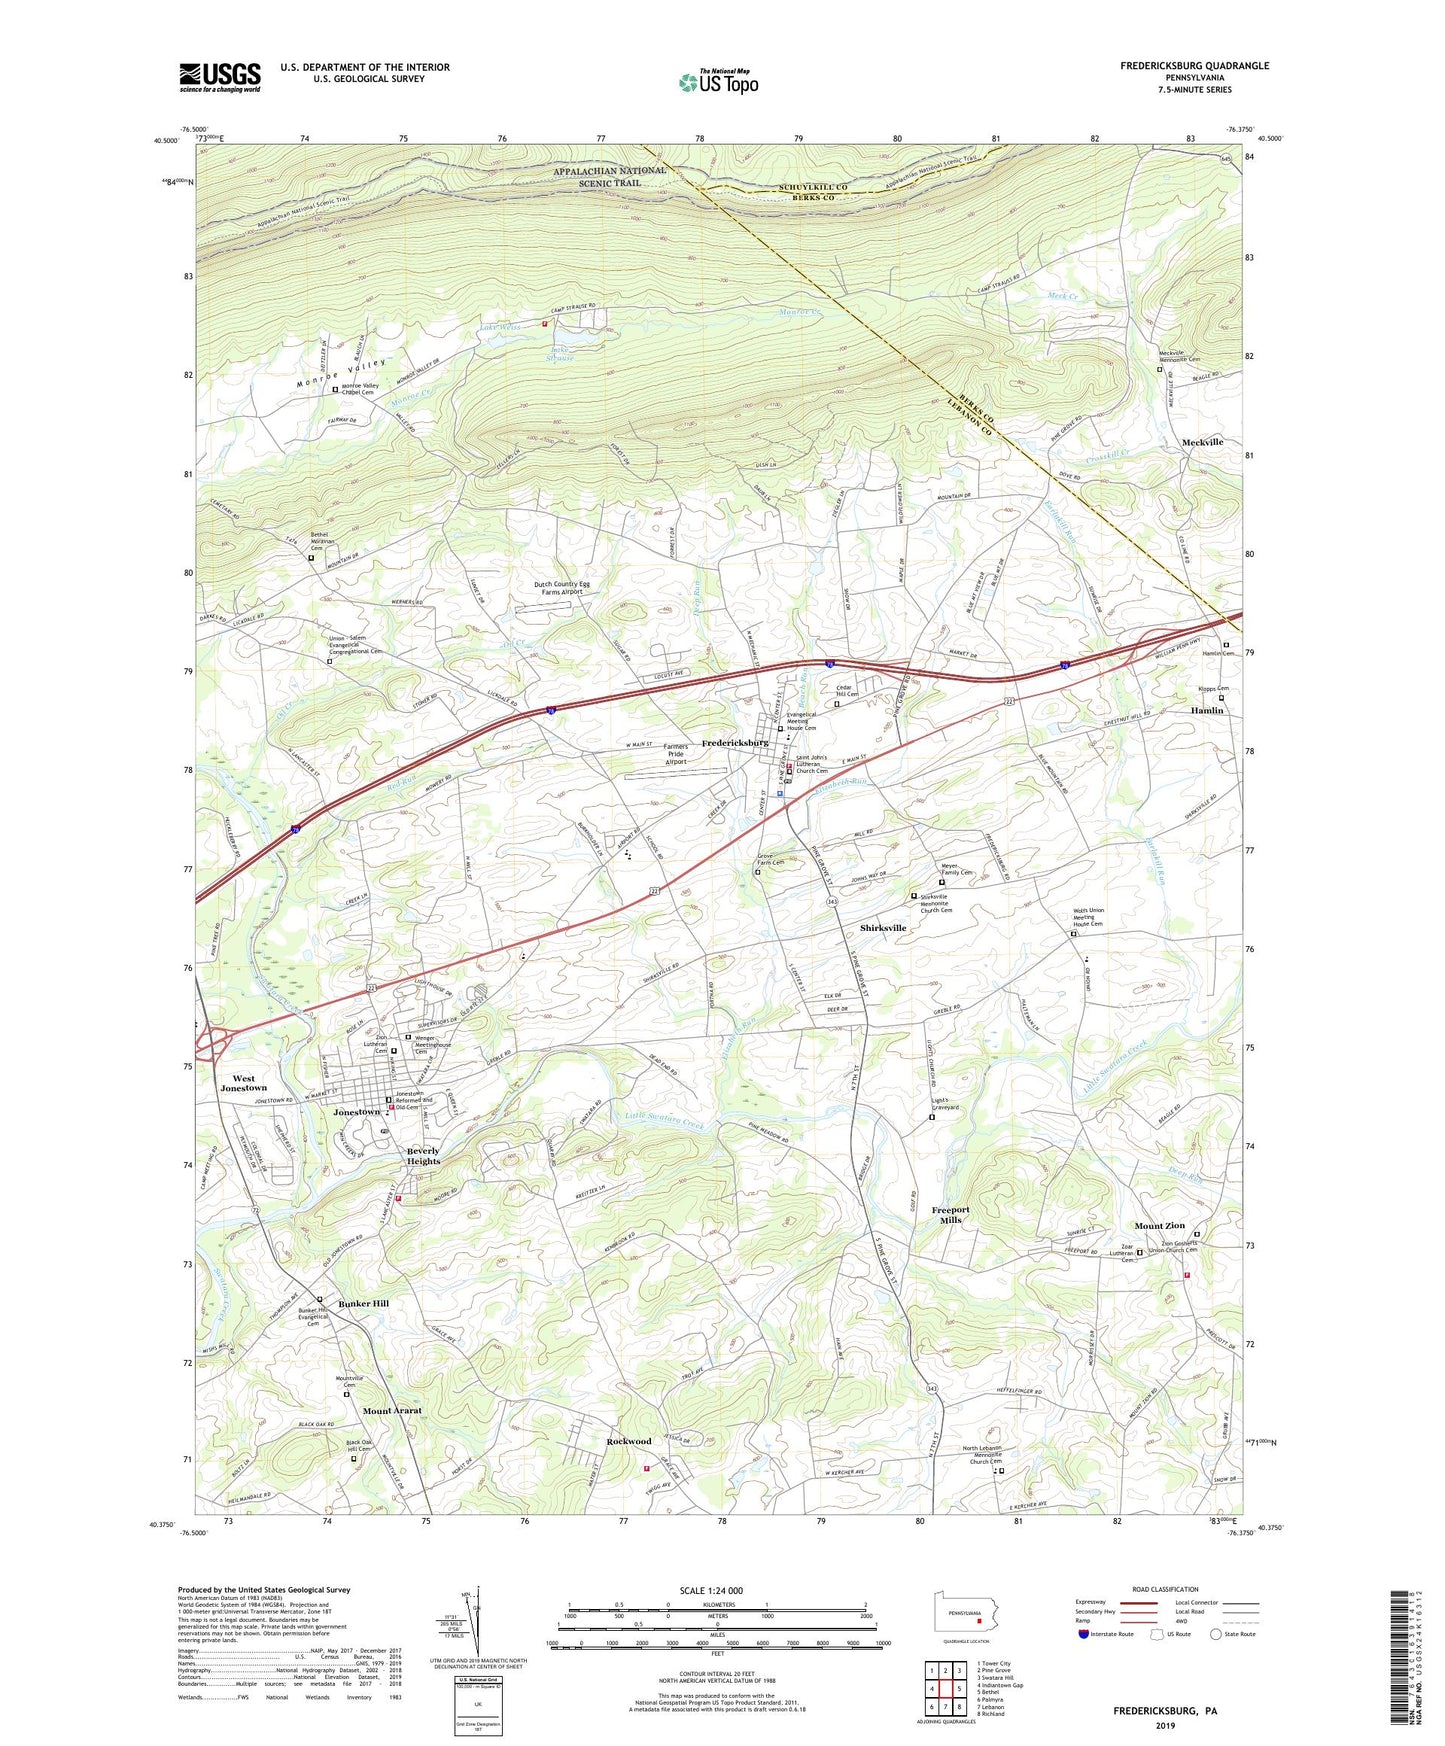 Fredericksburg Pennsylvania US Topo Map Image